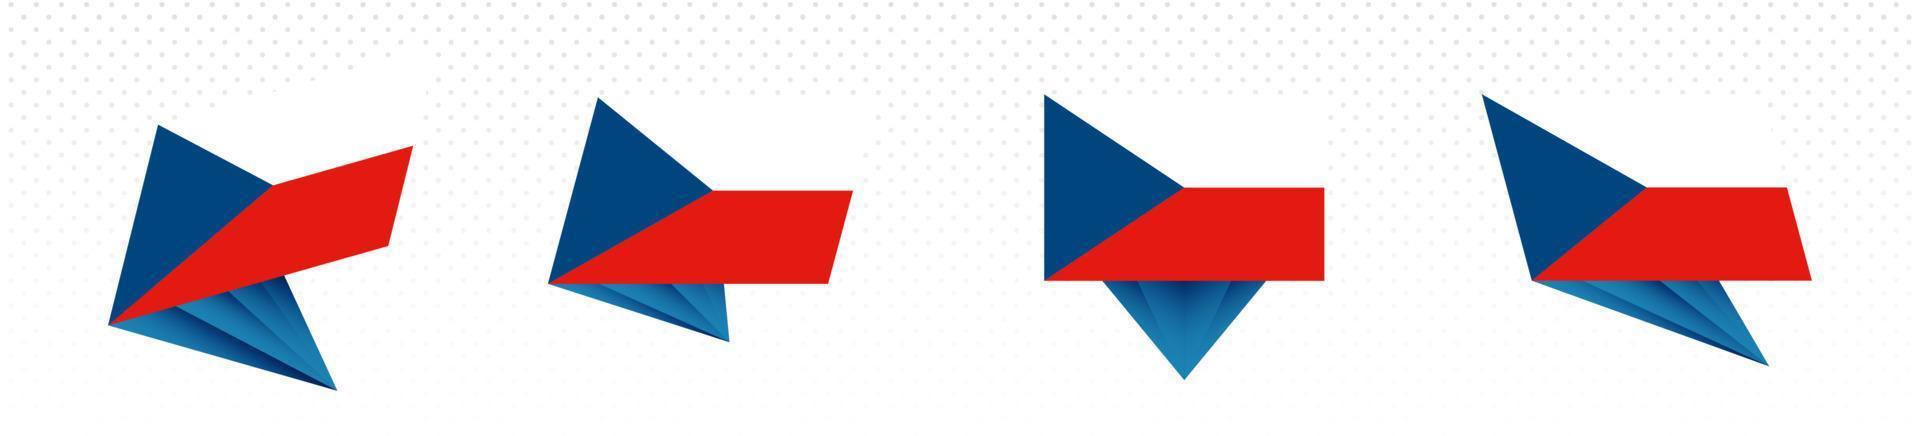 vlag van Tsjechisch republiek in modern abstract ontwerp, vlag set. vector